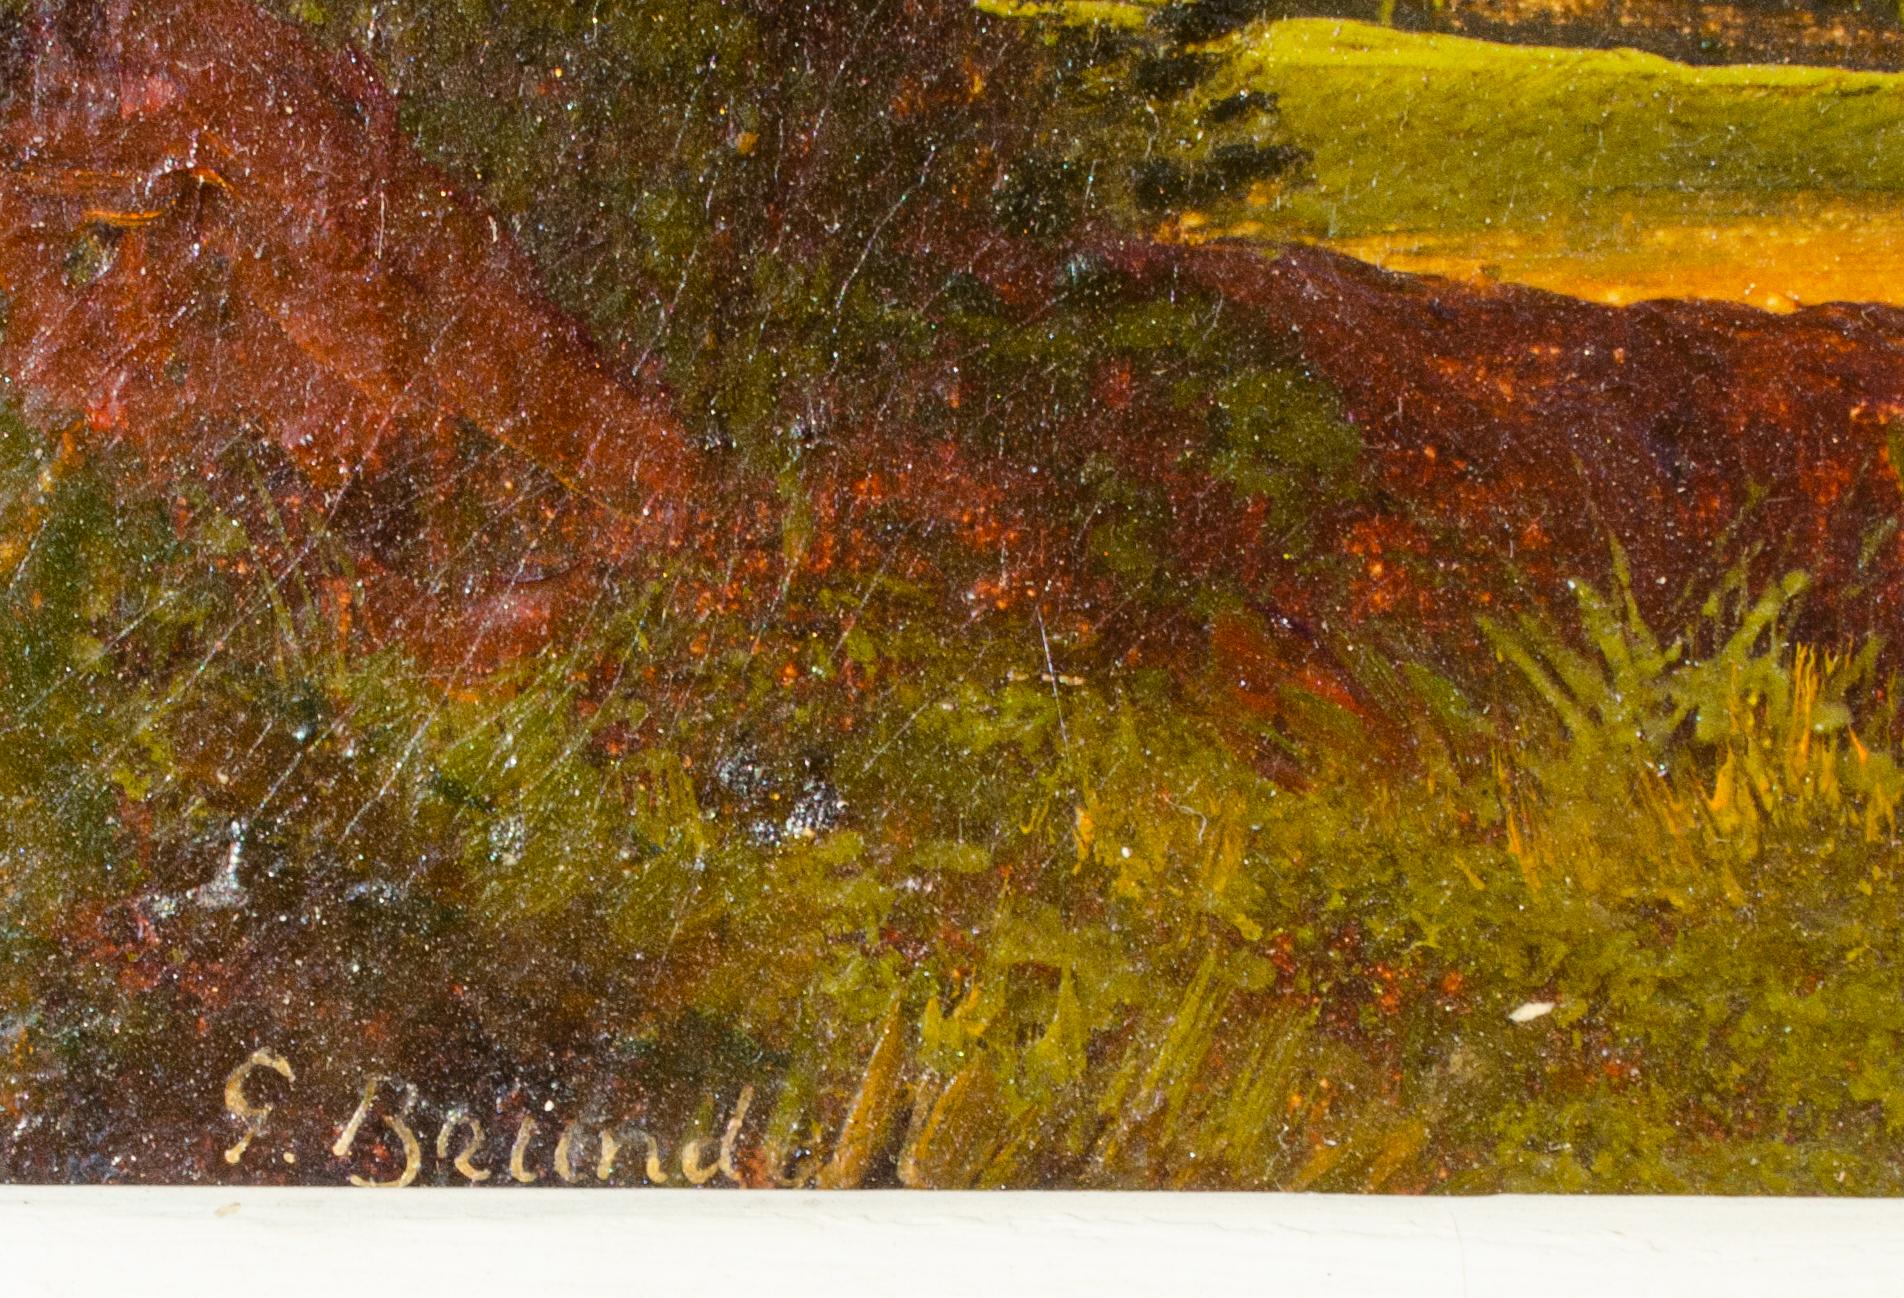 G. Brundell
Ohne Titel, c. Anfang des 20. Jahrhunderts
Öl auf Leinwand
Bildformat: 10 x 18 Zoll.
Gerahmt: 19 7/8 x 27 7/8 x 2 Zoll.
Signiert unten links
